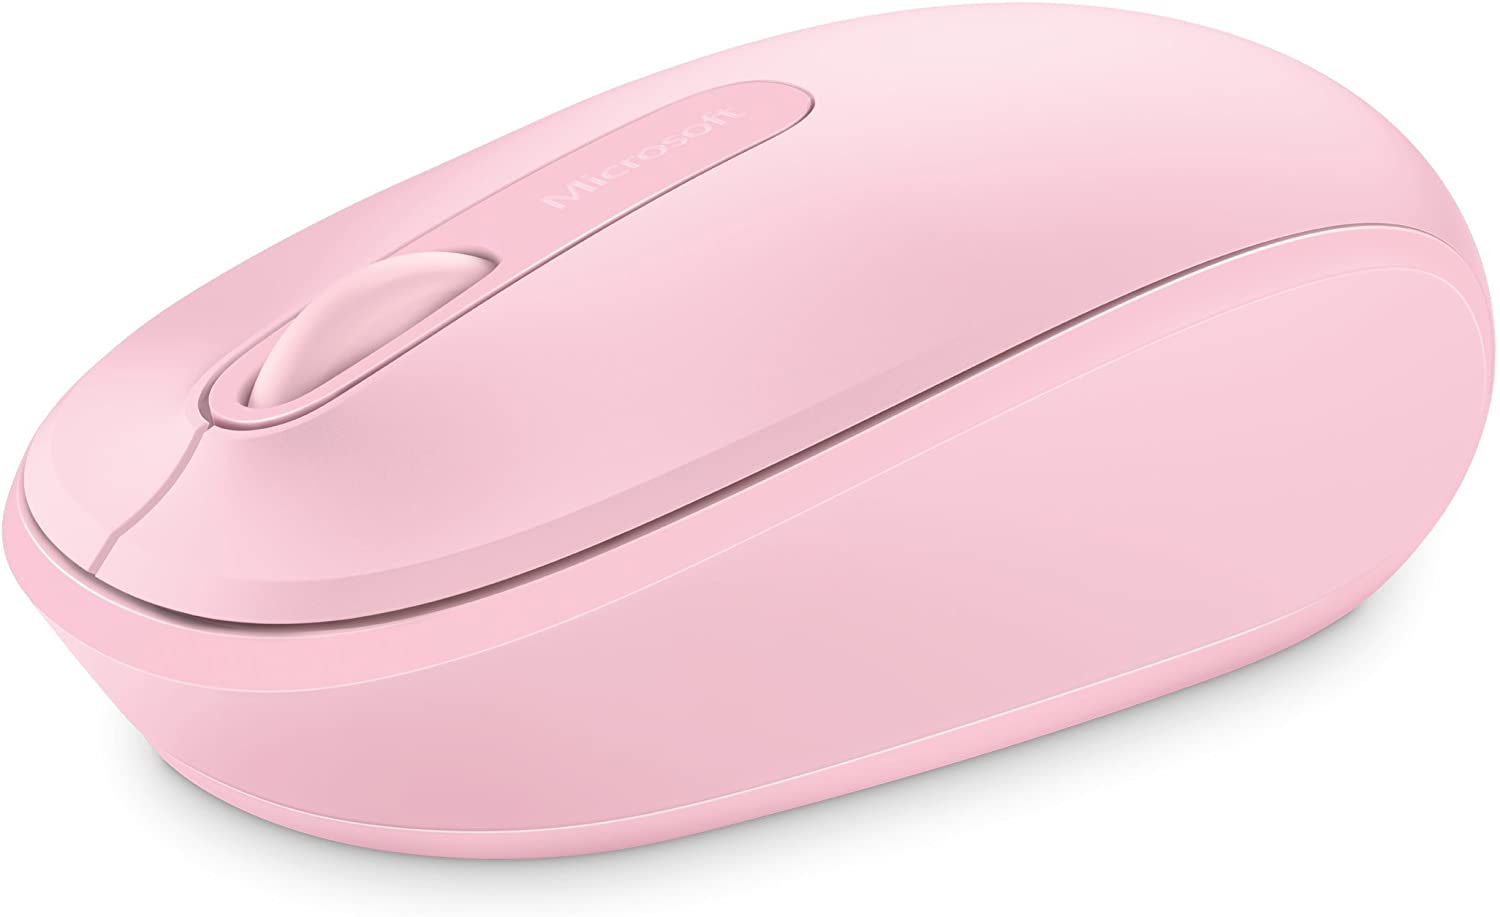 Microsoft Wireless Mouse 1850 เมาส์ไร้สาย สีชมพู ของแท้ ประกันศูนย์ 3ปี (Pink)